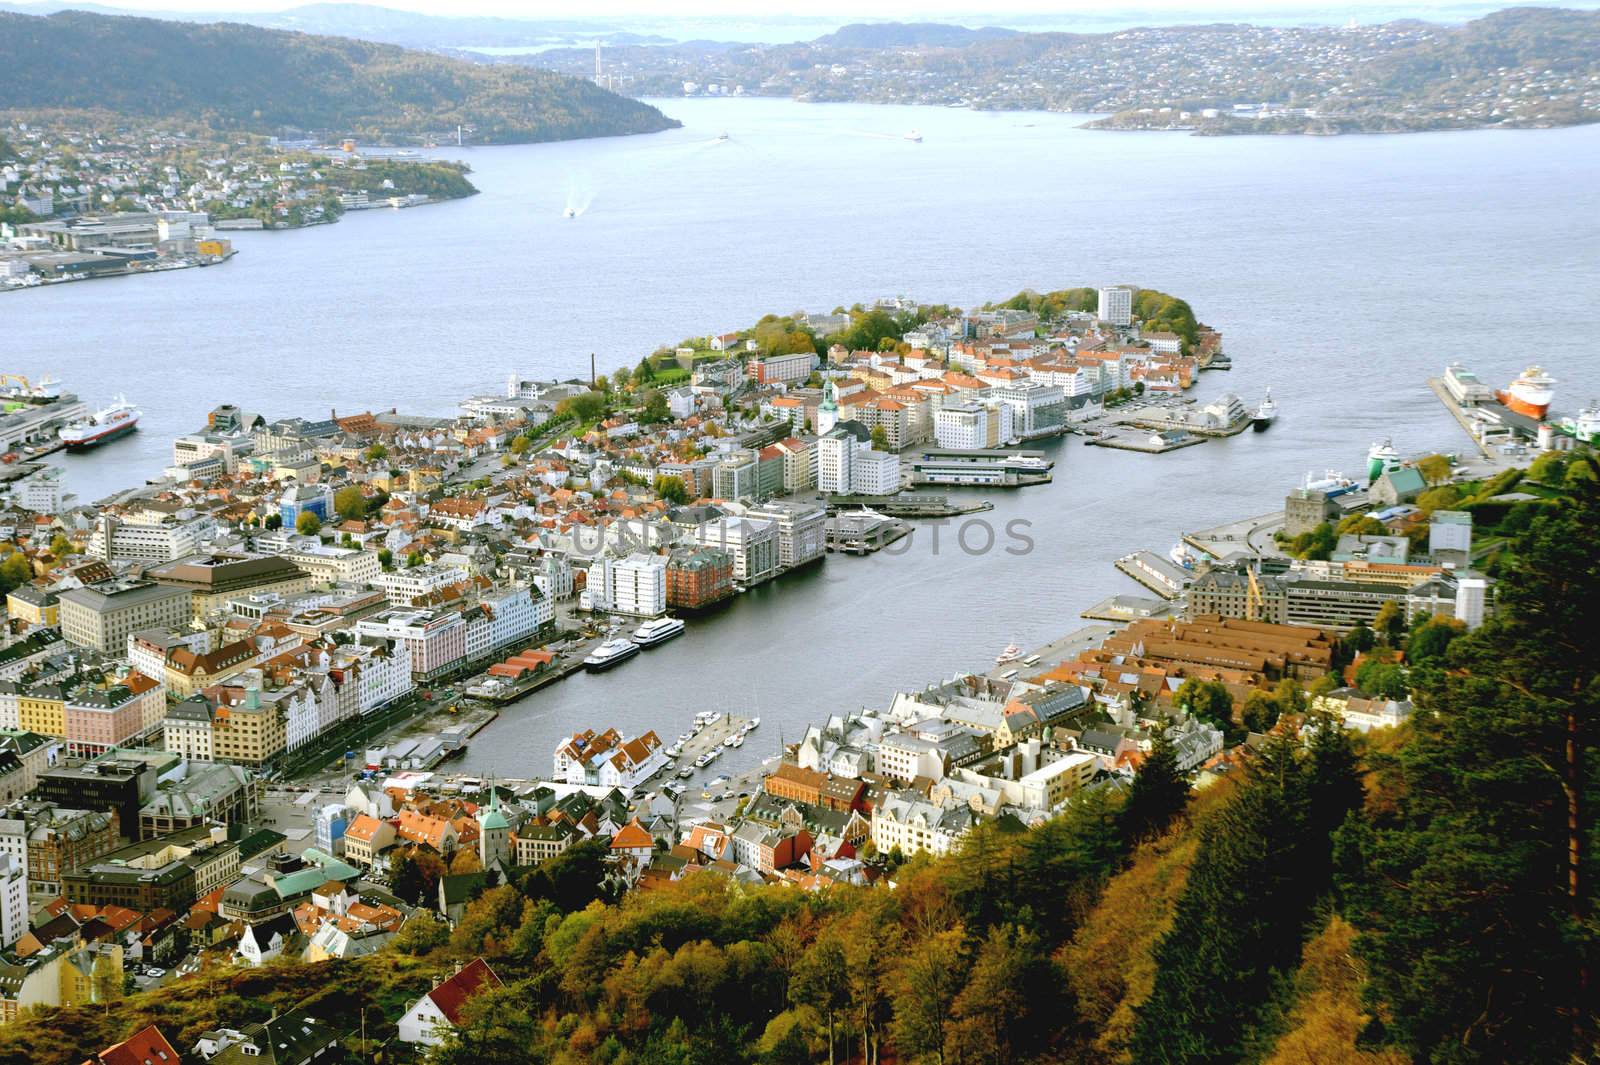 Bergen by Alenmax